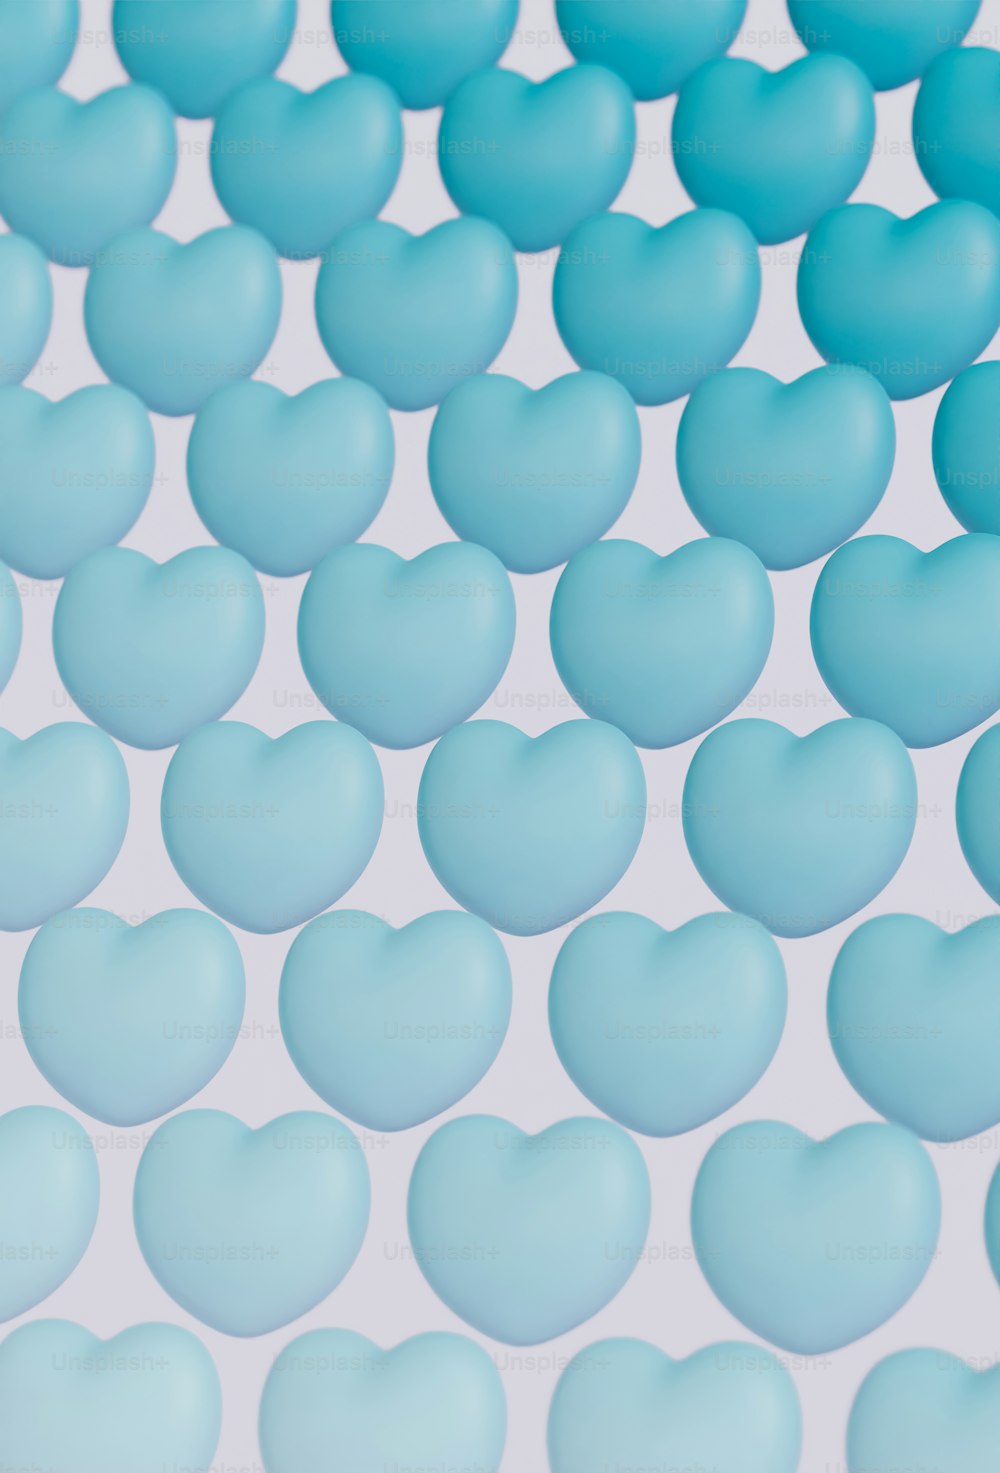 Un grupo de bolas azules